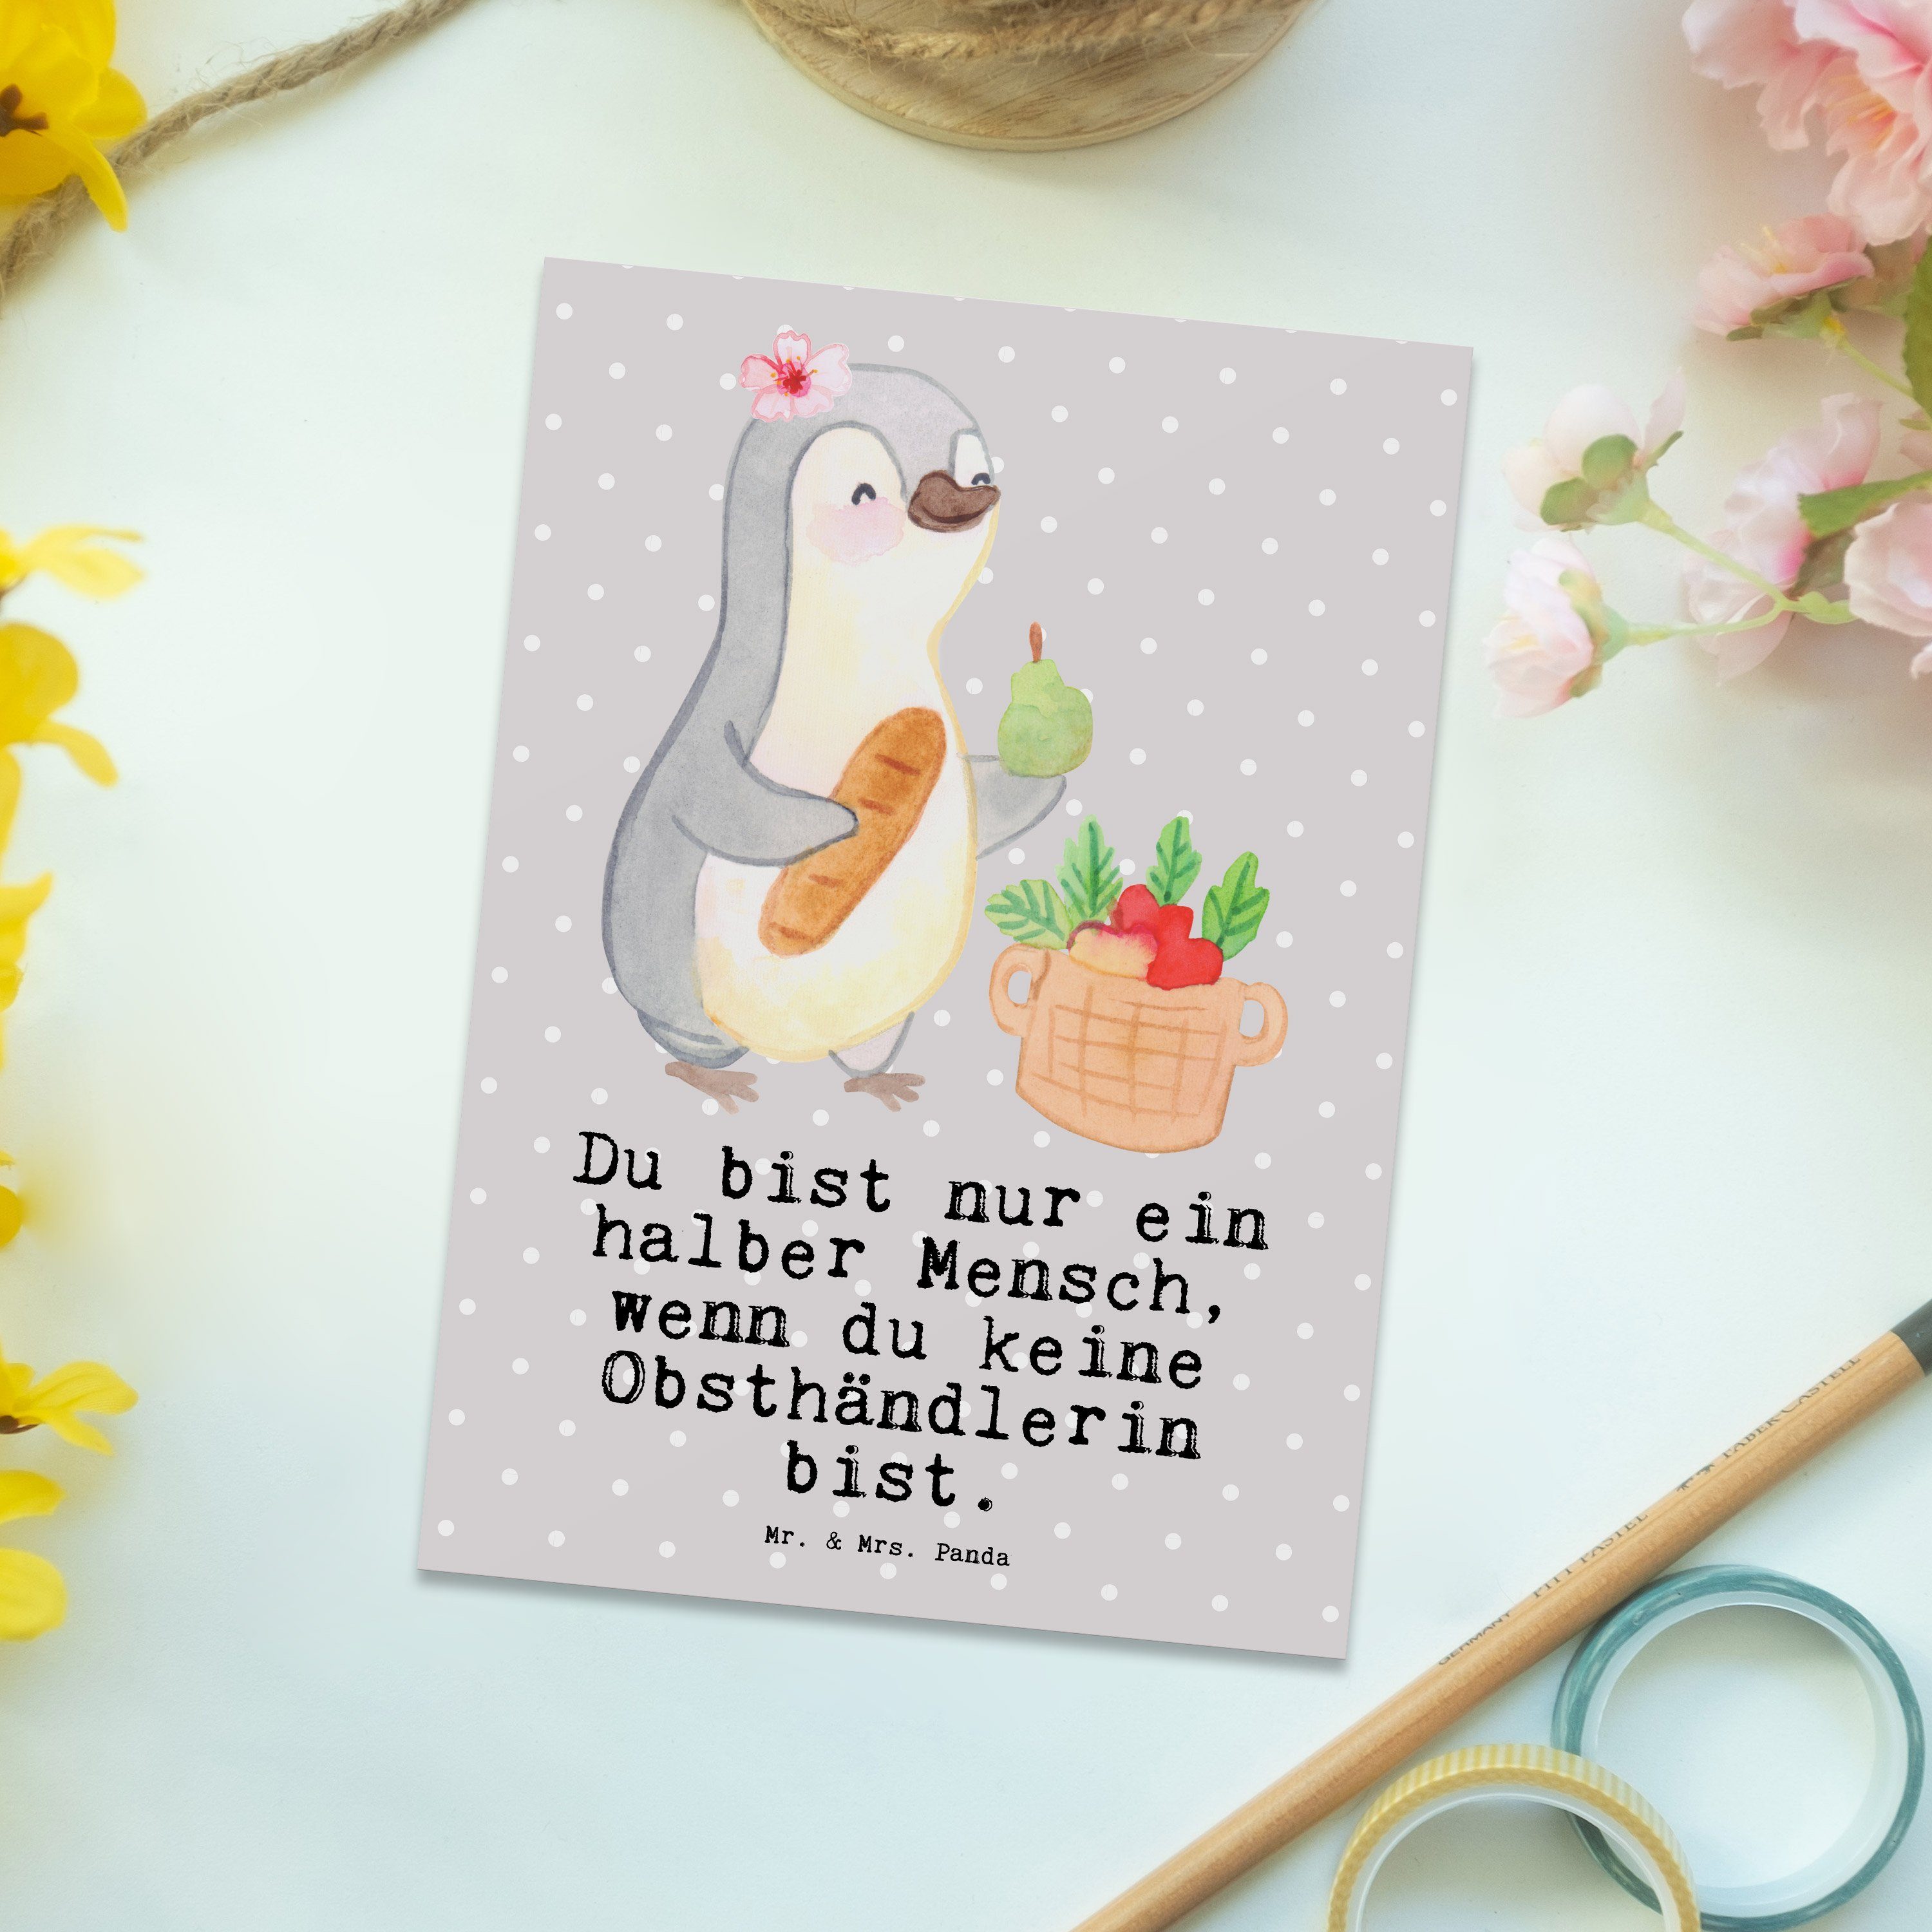 Obsthändlerin Grau & mit - - Obstplantage, Herz Mr. Ansic Panda Mrs. Pastell Postkarte Geschenk,